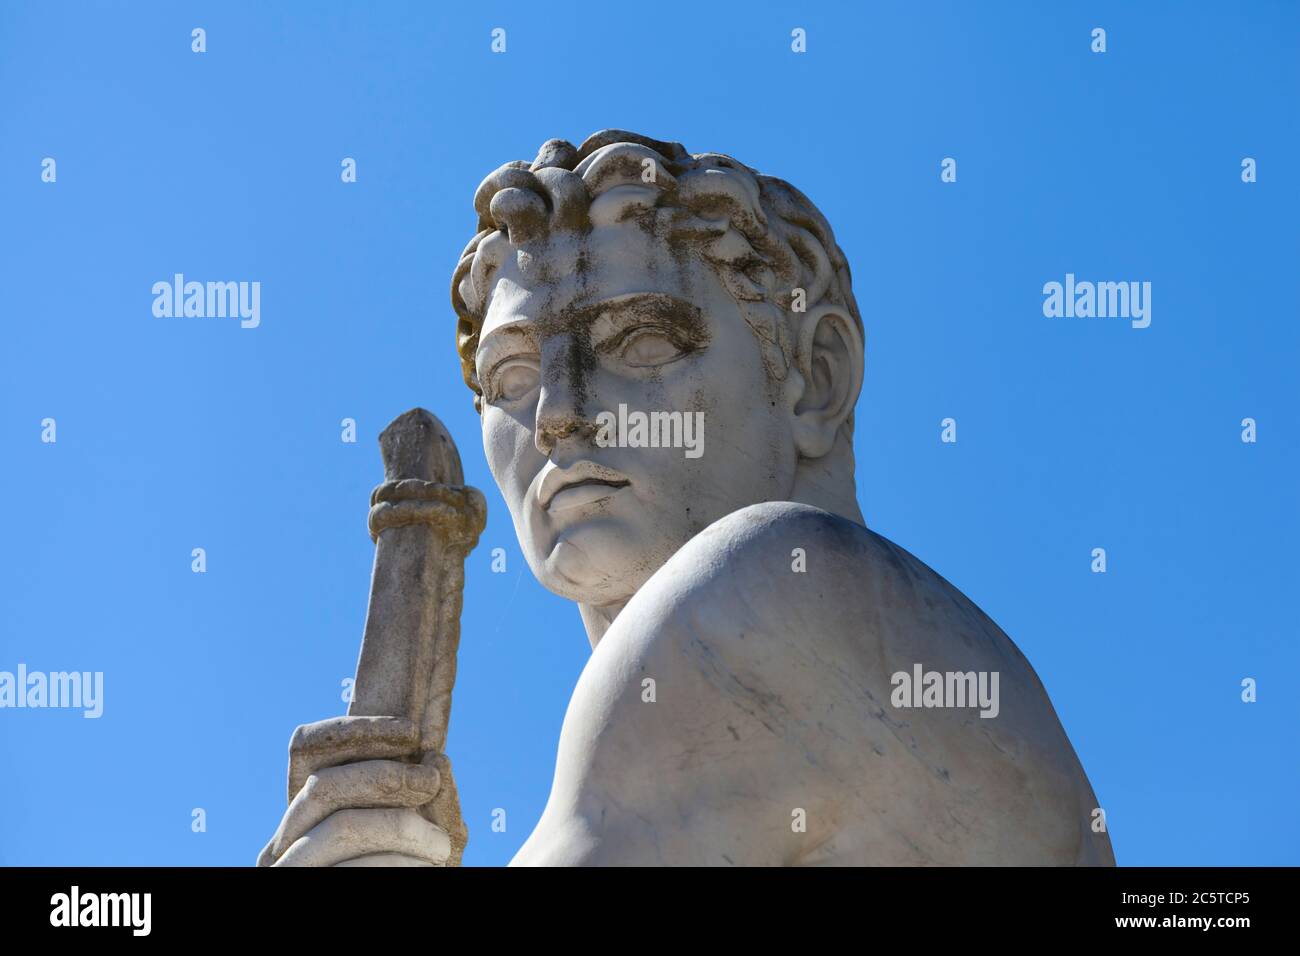 Atleta statua in marmo ritratto contro cielo blu - luce solare Foto Stock